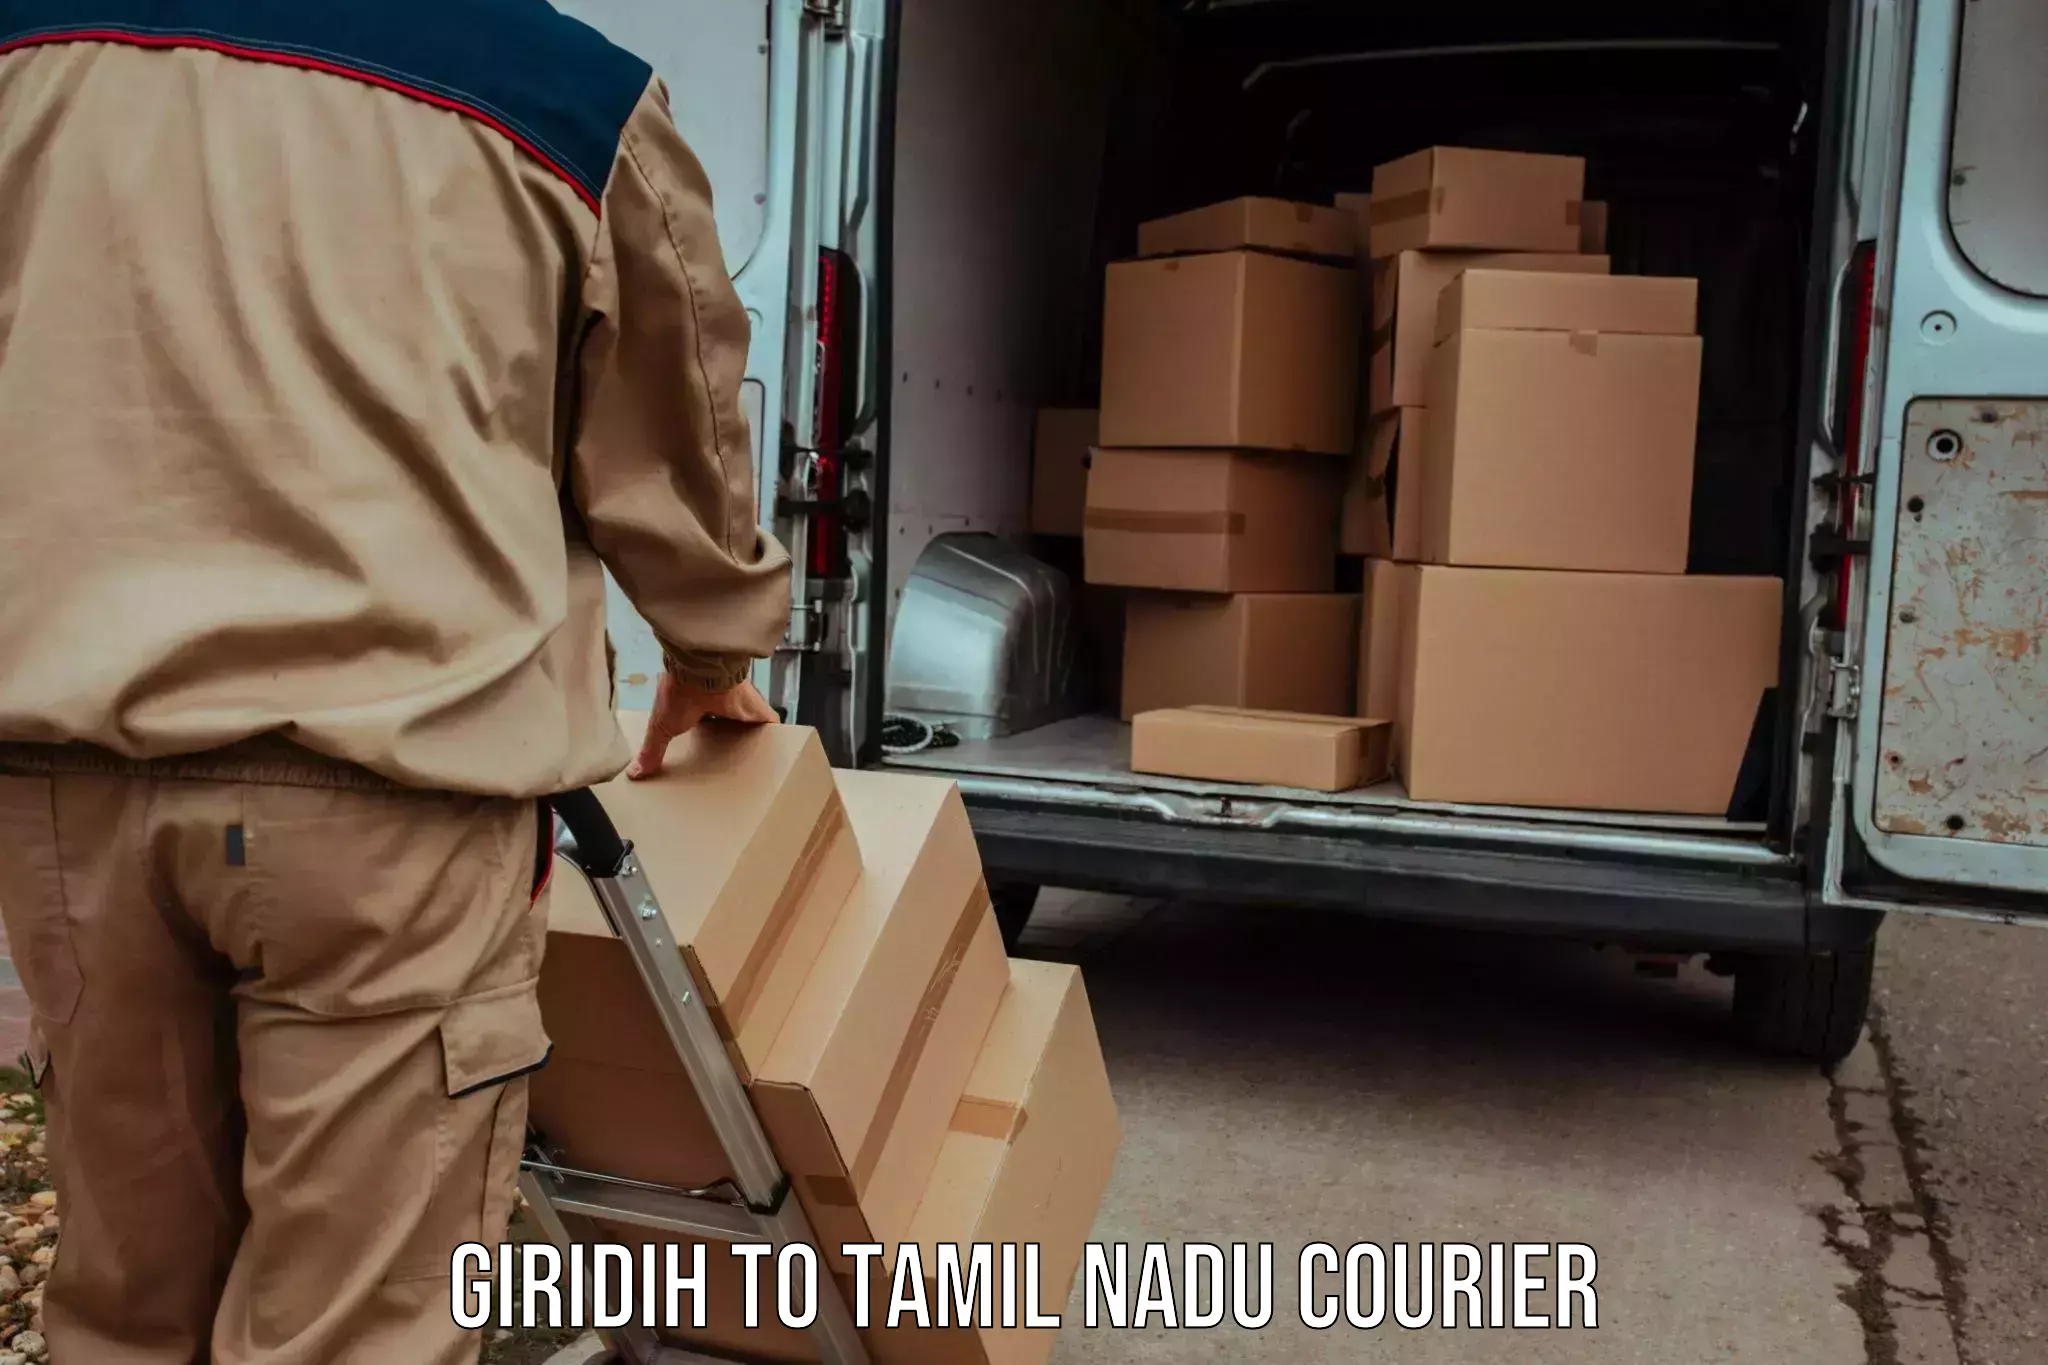 Speedy delivery service Giridih to Tamil Nadu